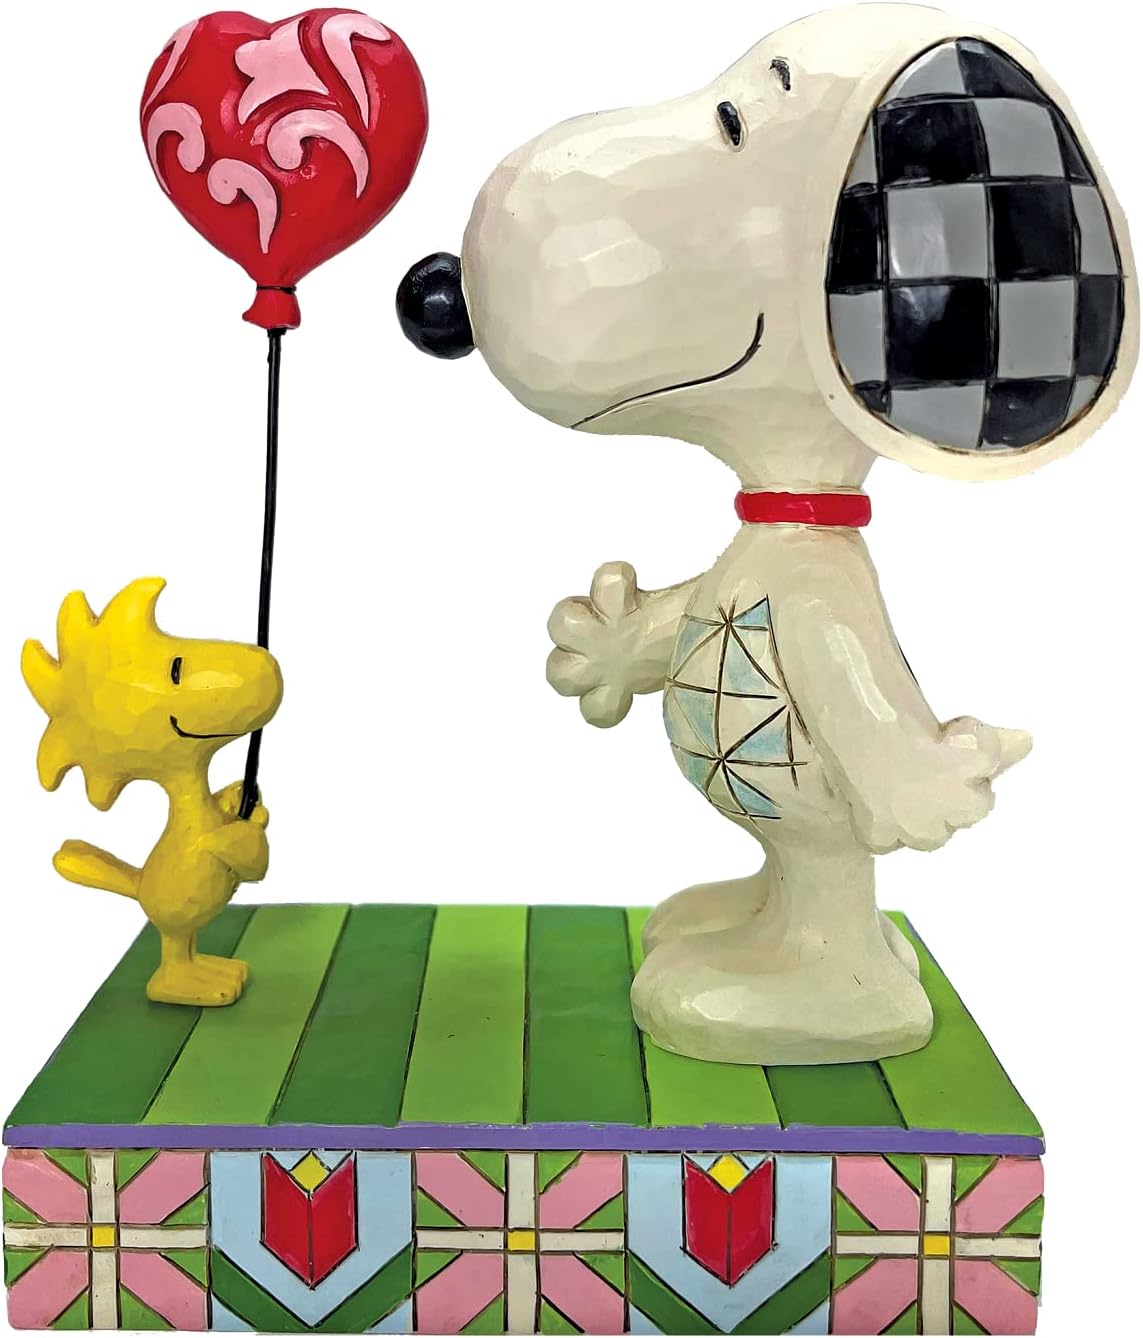 Peanuts-Snoopy-Woodstock-Herz-Jim-Shore-Figur-berlindeluxe-ballon-herz-hund